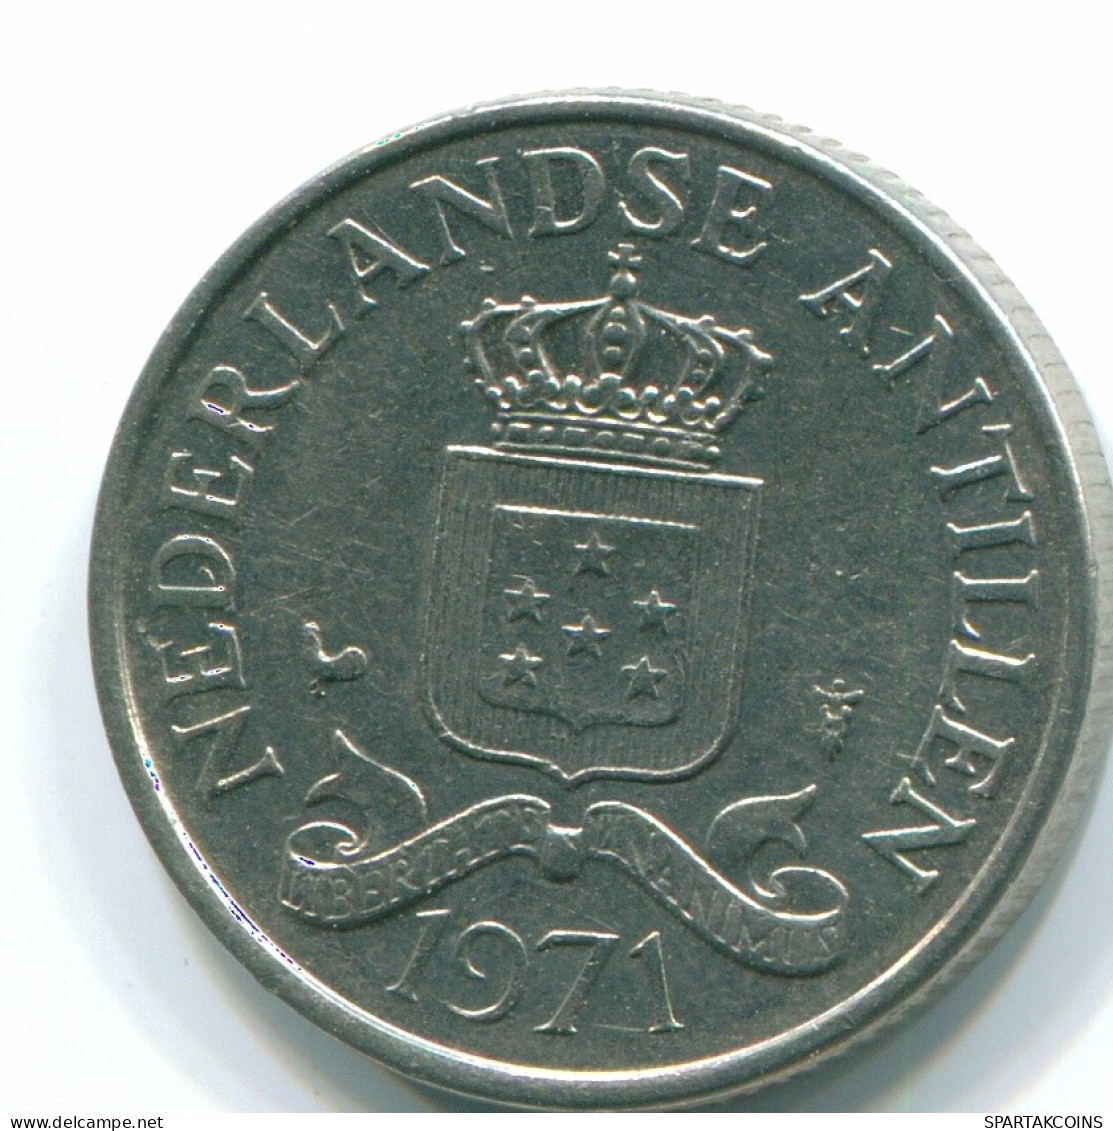 25 CENTS 1971 NIEDERLÄNDISCHE ANTILLEN Nickel Koloniale Münze #S11573.D.A - Niederländische Antillen